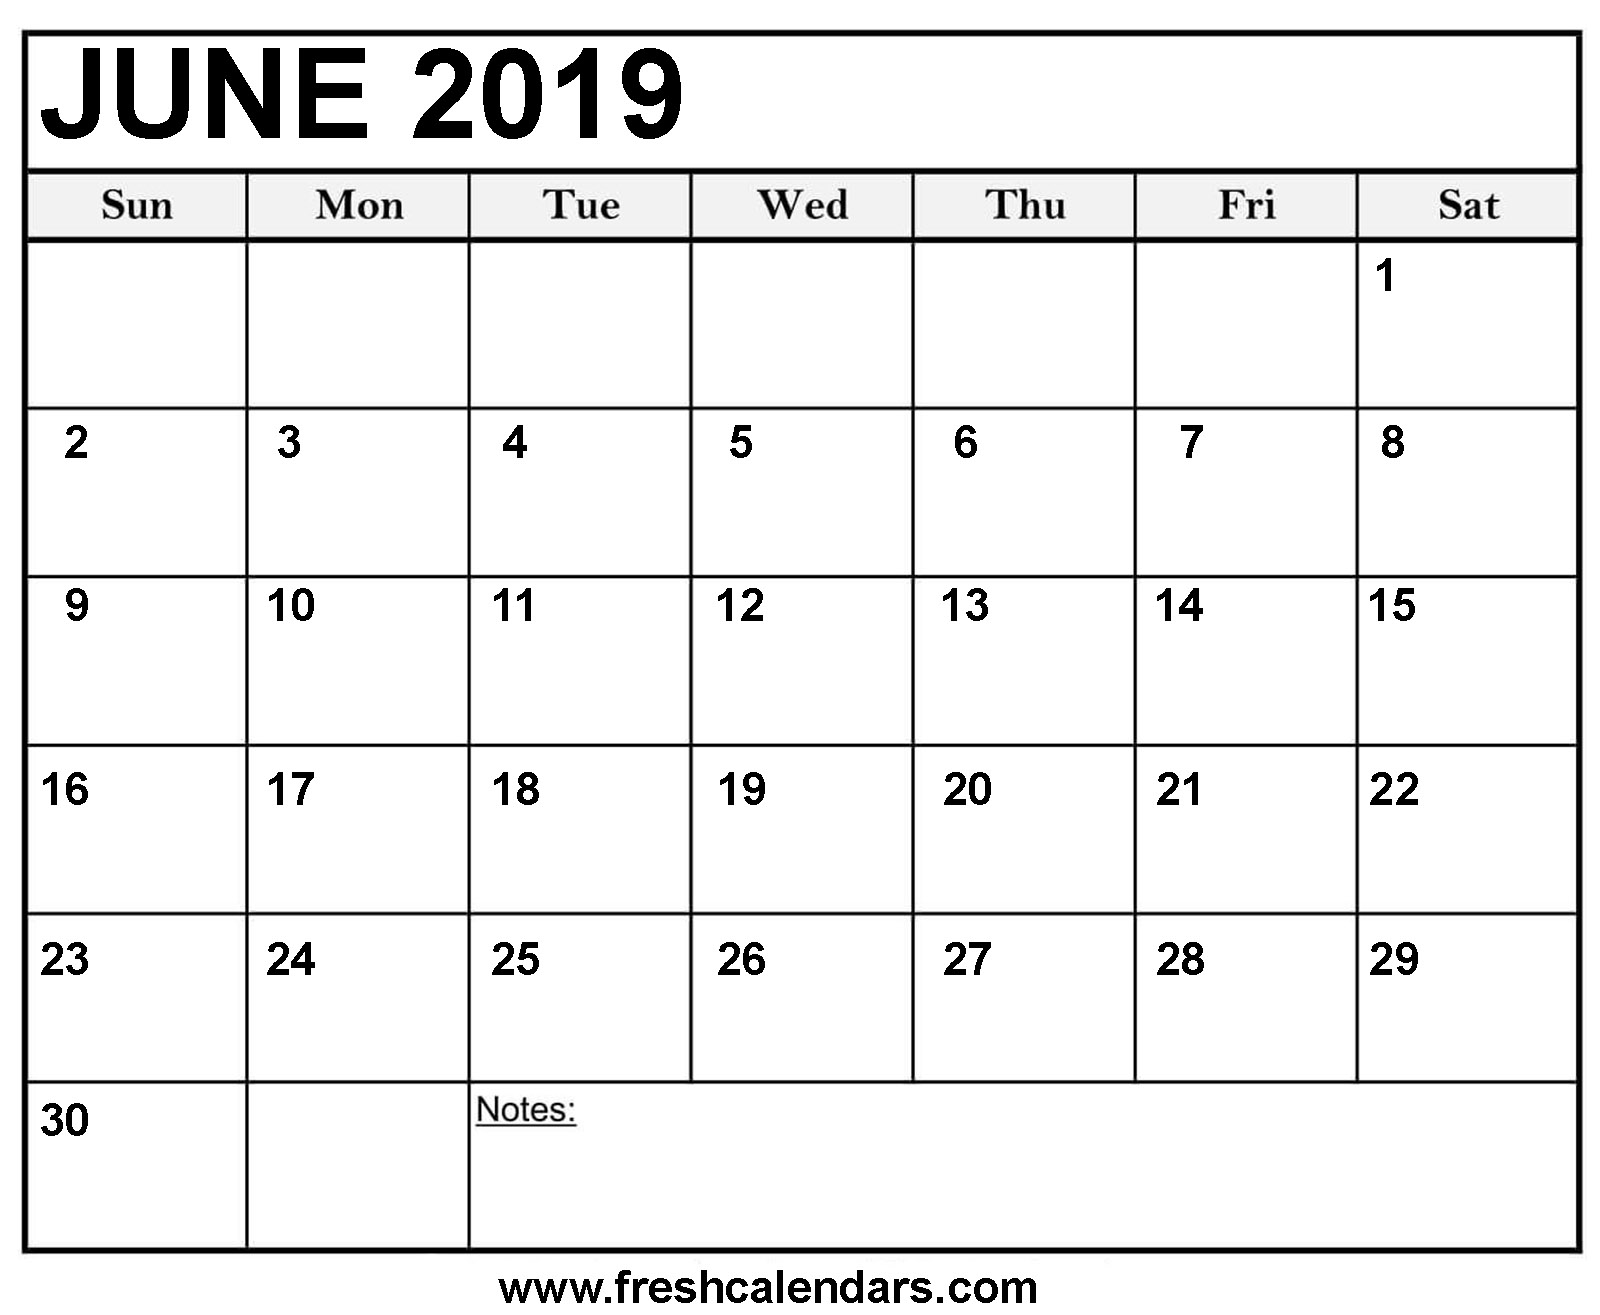 June 2019 Calendar Printable